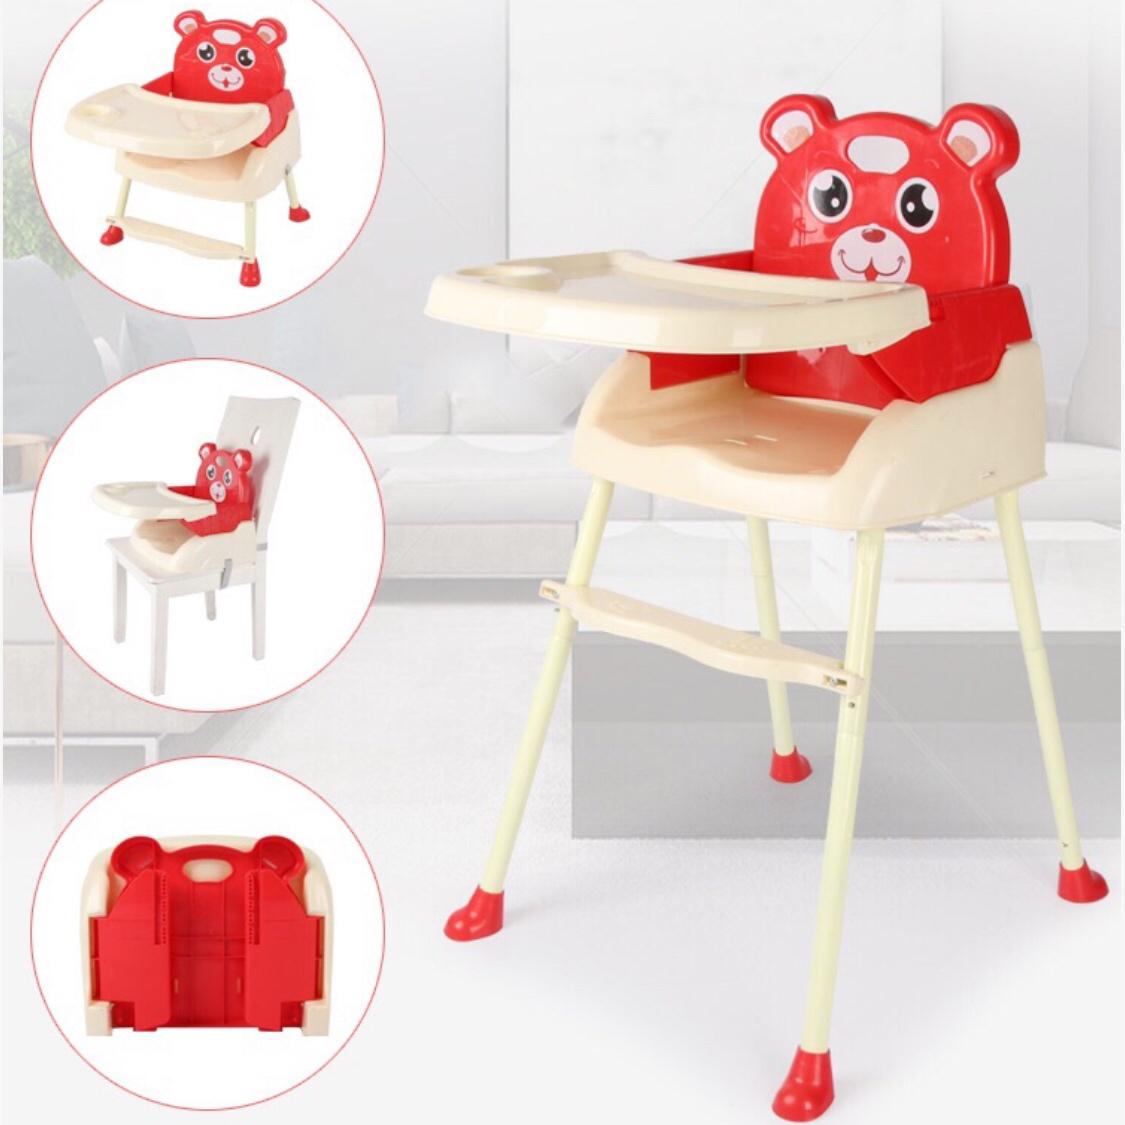 เก้าอื้กินข้าวเด็ก  4 in 1 พับได้ เก้าอื้หัดนัง ของไช้เด็ก โต็ะกินข้าวเด็ก โต็ะกินข้าวเต็กทรงสูง  เก้าอี้กินข้าวเต็กทรงสูง โต๊ะเต็ก เก้าส้เตัก สีแดง Red รุนพับได้ Baby High Chair